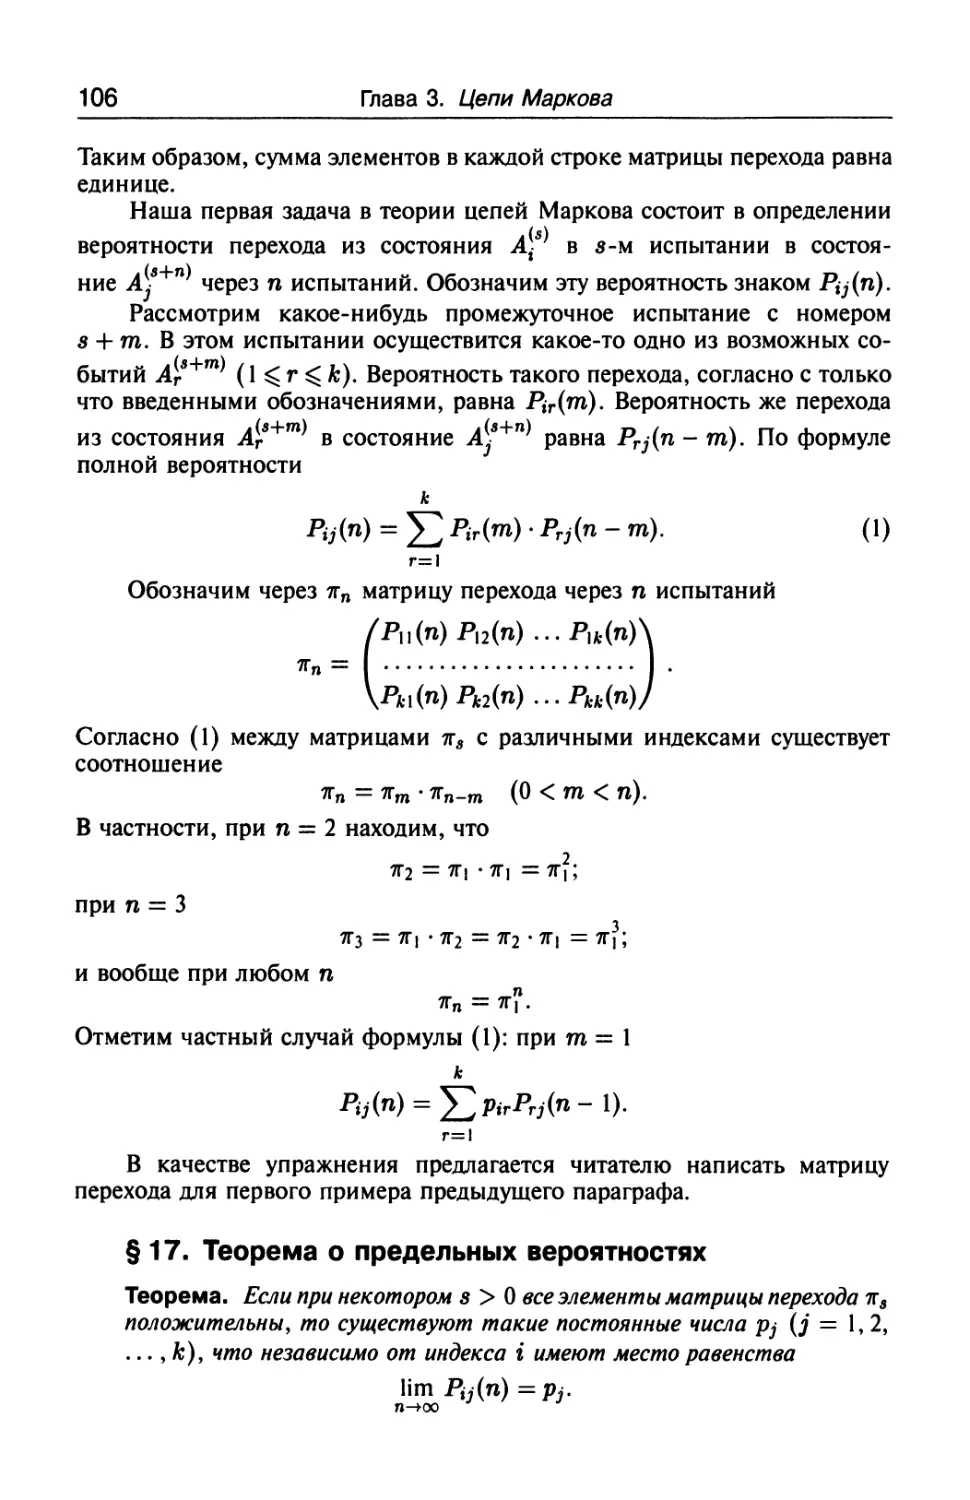 § 17. Теорема о предельных вероятностях